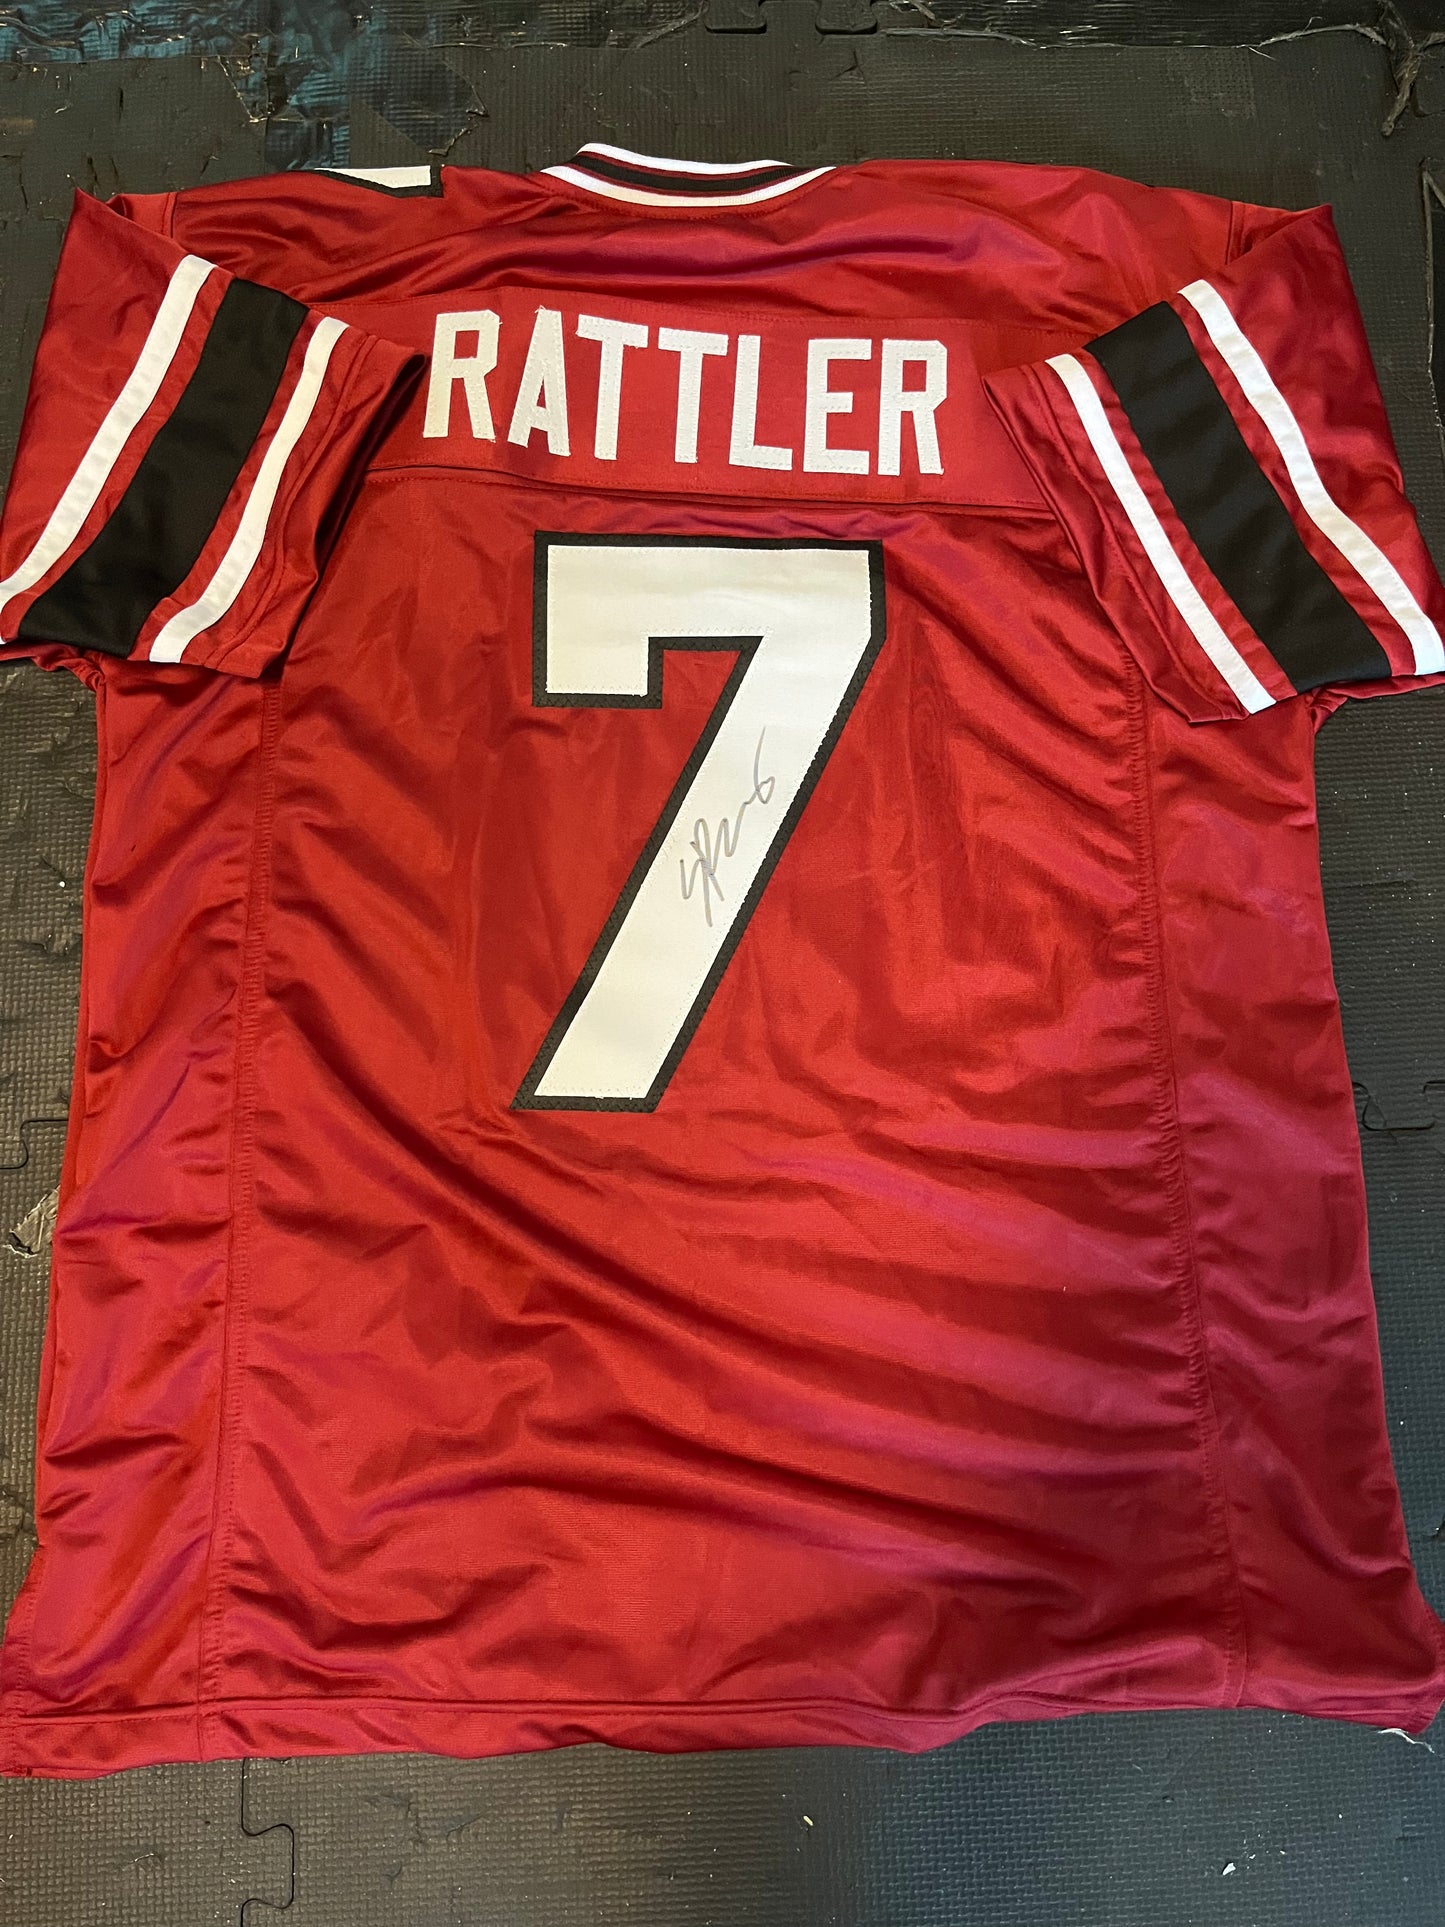 Spencer Rattler Signed Jersey